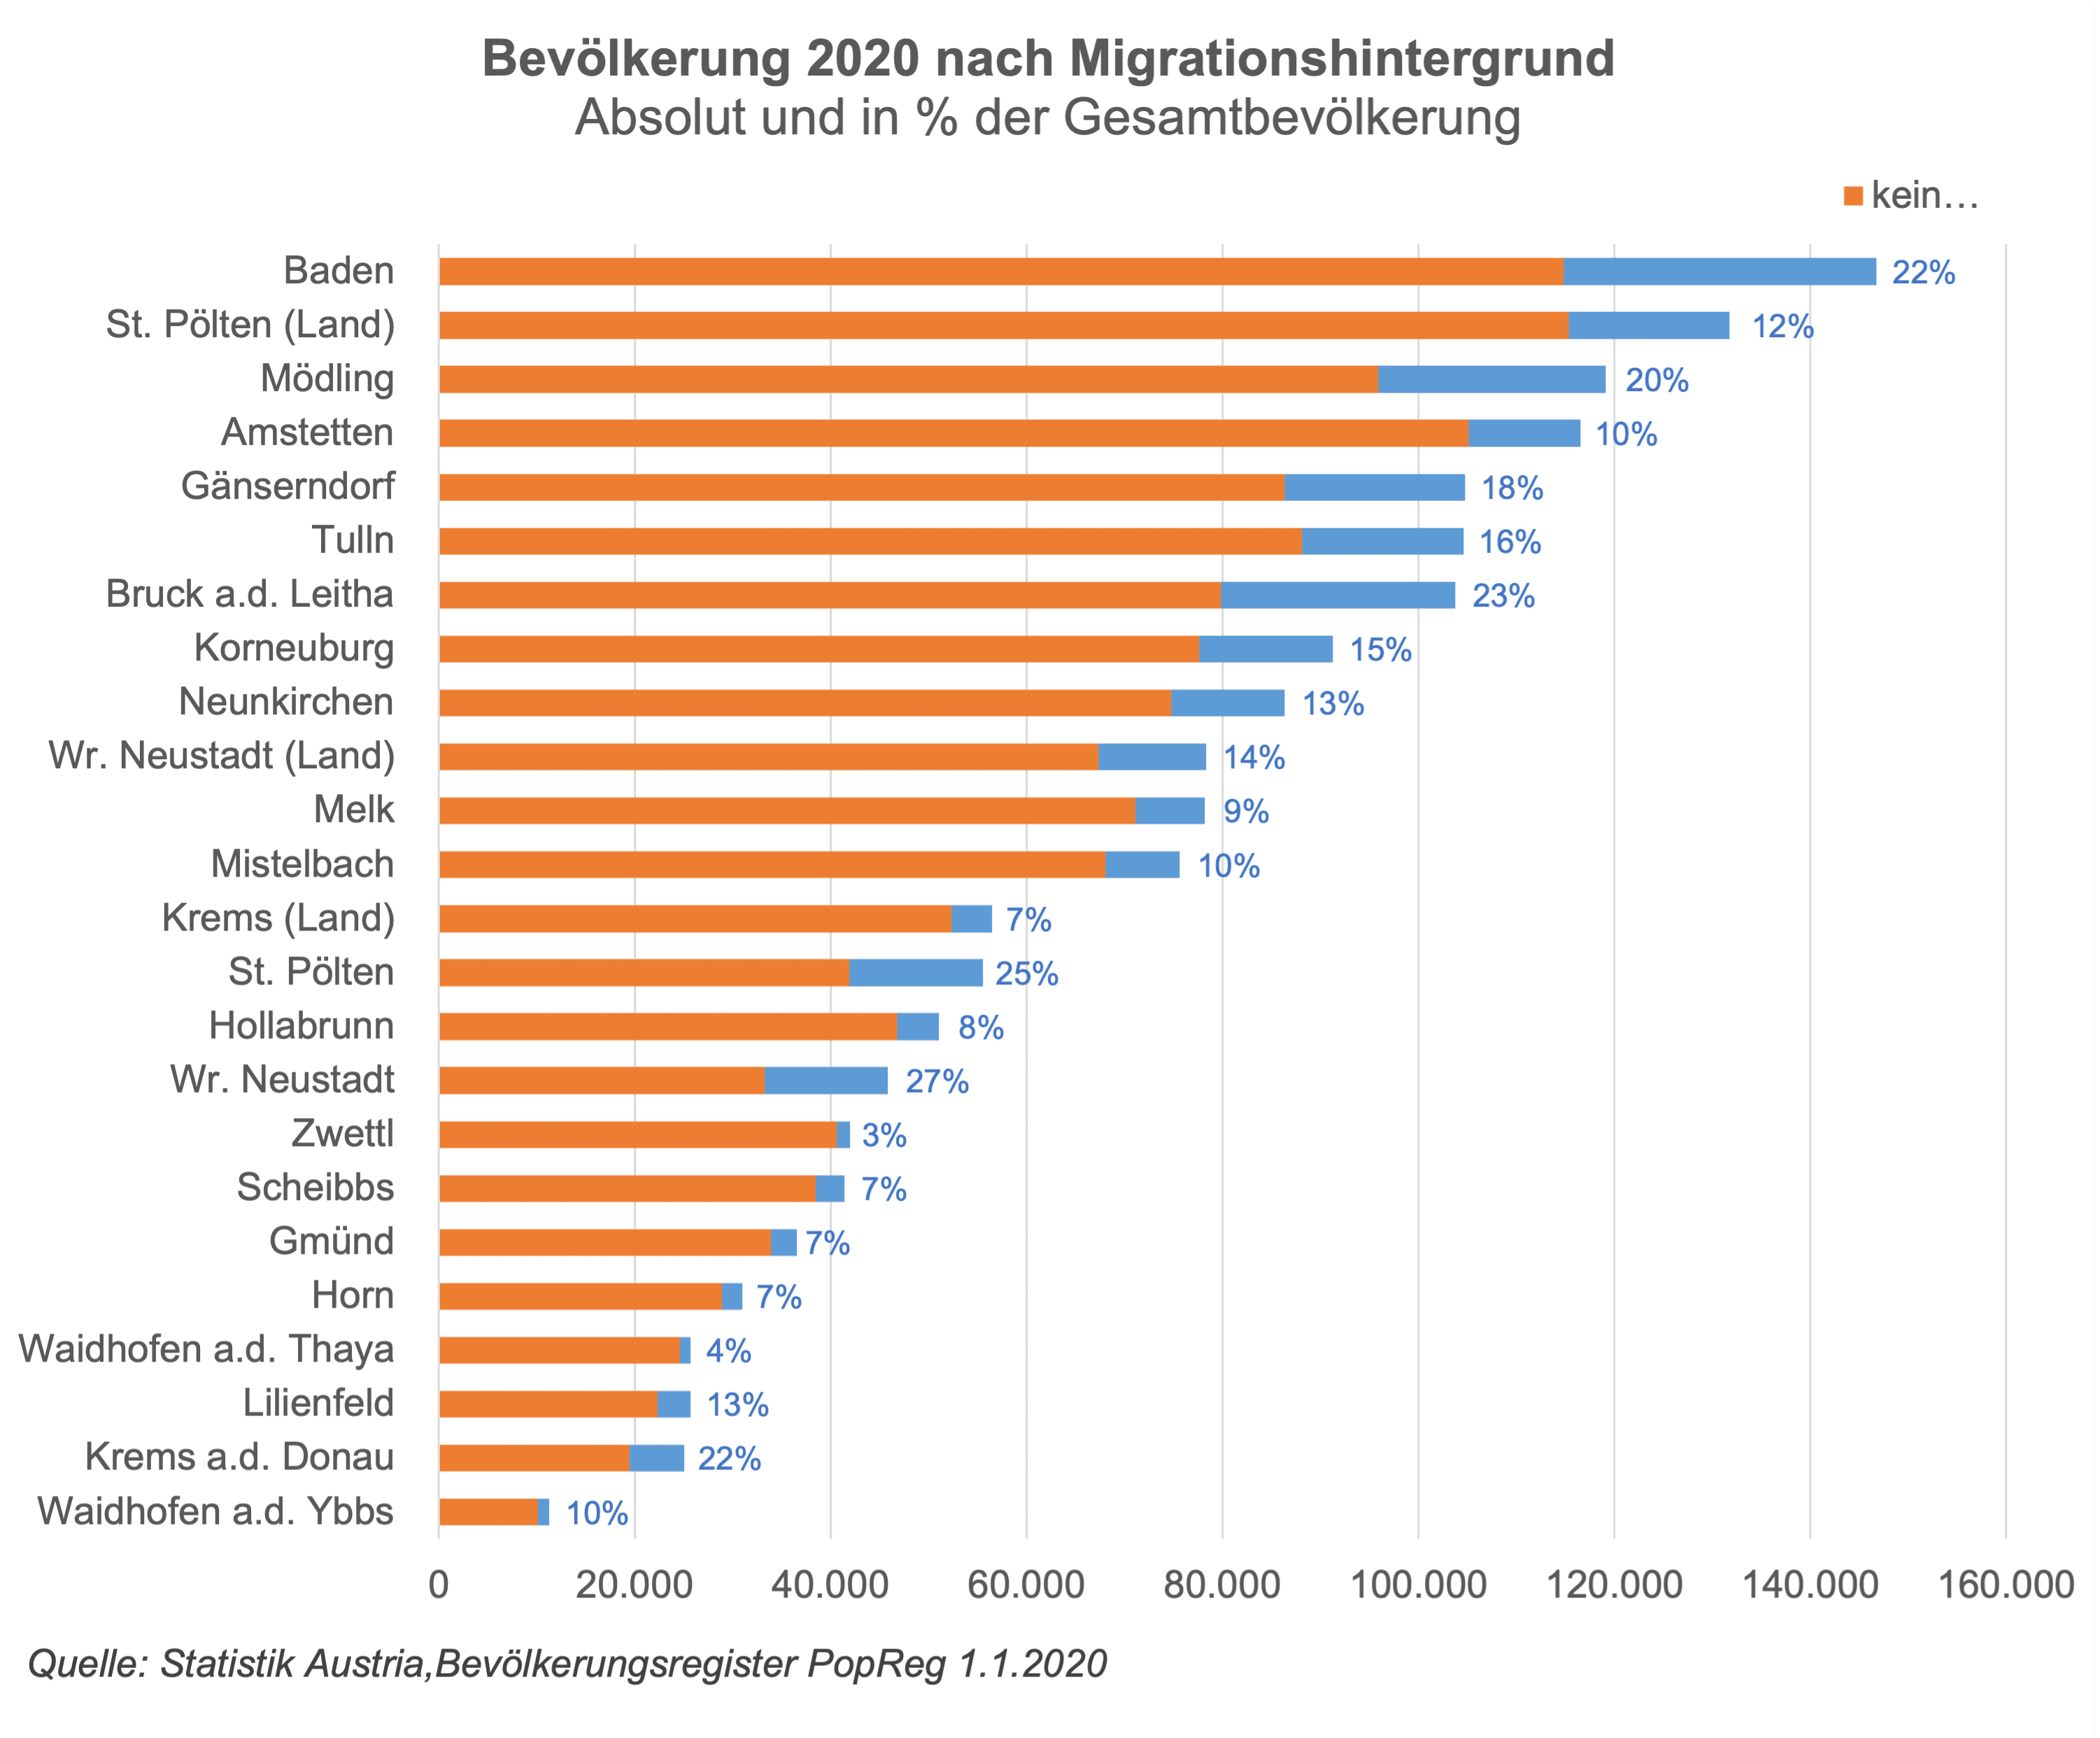 Die Stabgrafik zeigt die Absolutzahlen der Bevölkerung in Niederösterreichs Städten und Stadtregionen und dabei auch den relativen MigrantInnenanteil. Dieser liegt am höchsten in Wr. Neustadt bei 27% und am geringsten in Zwettl bei 3%. Hinsichtlich des Anteils der Bevölkerung mit Migrationshintergrund liegt NÖ mit 16 % deutlich niedriger gegenüber dem Durchschnitt von 24%. Dies ist analog beim Ausländeranteil mit 10,6 % gegenüber 17 % in Österreich der Fall. Andererseits liegt aber die Einbürgerungsrate in NÖ über dem Durchschnitt.